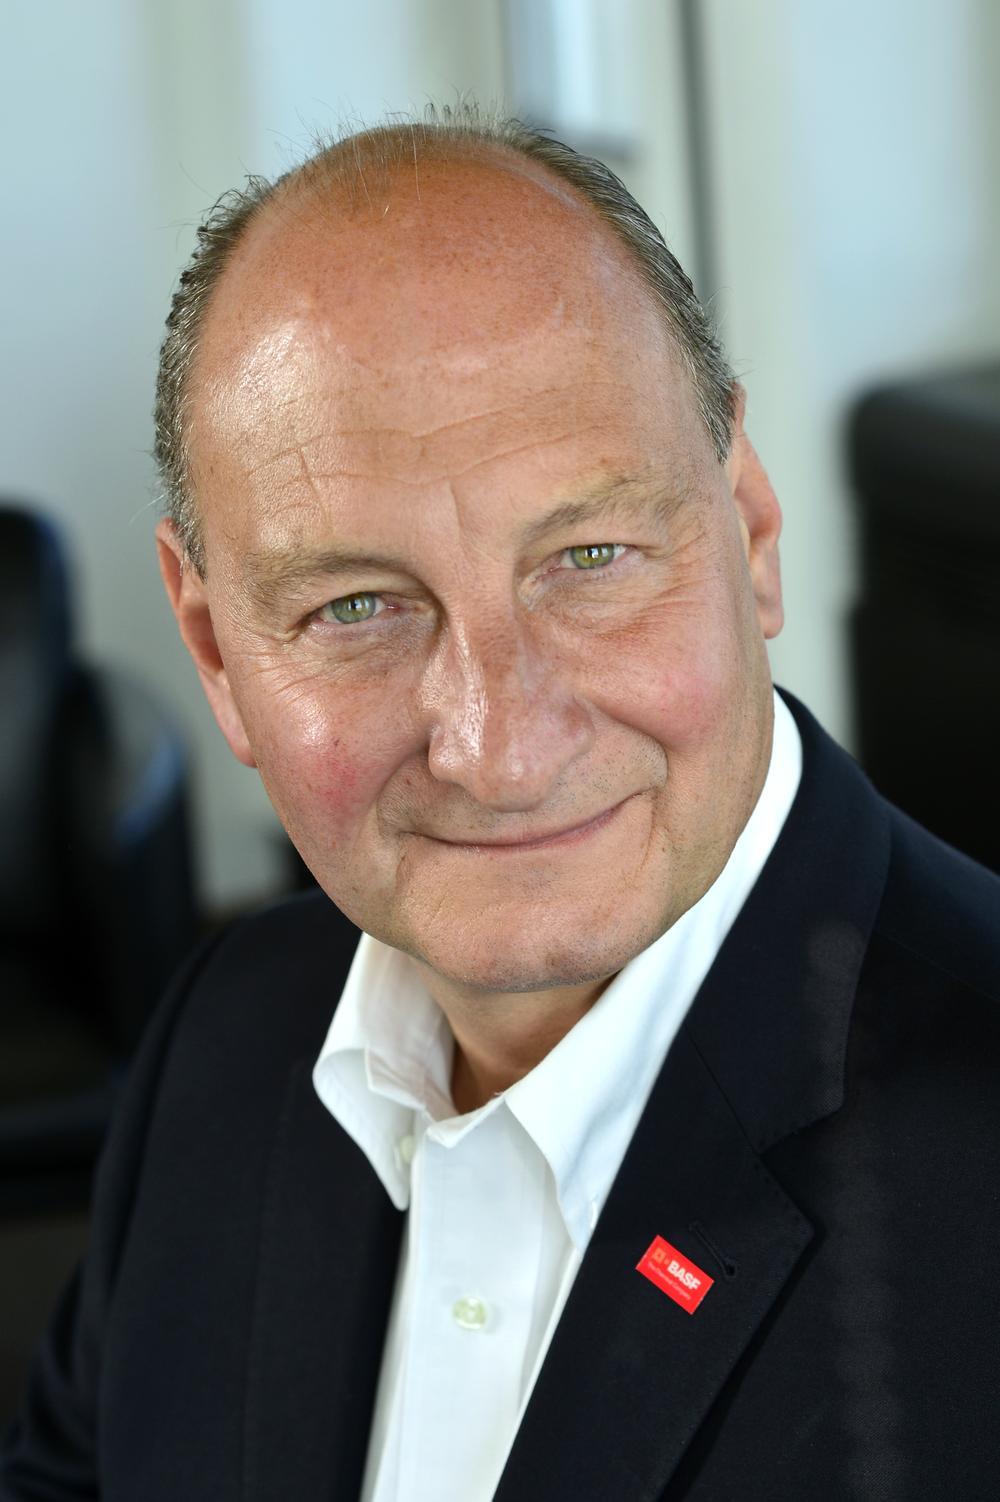 Wouter De Geest, président de la fédération sectorielle essenscia, CEO BASF Anvers.